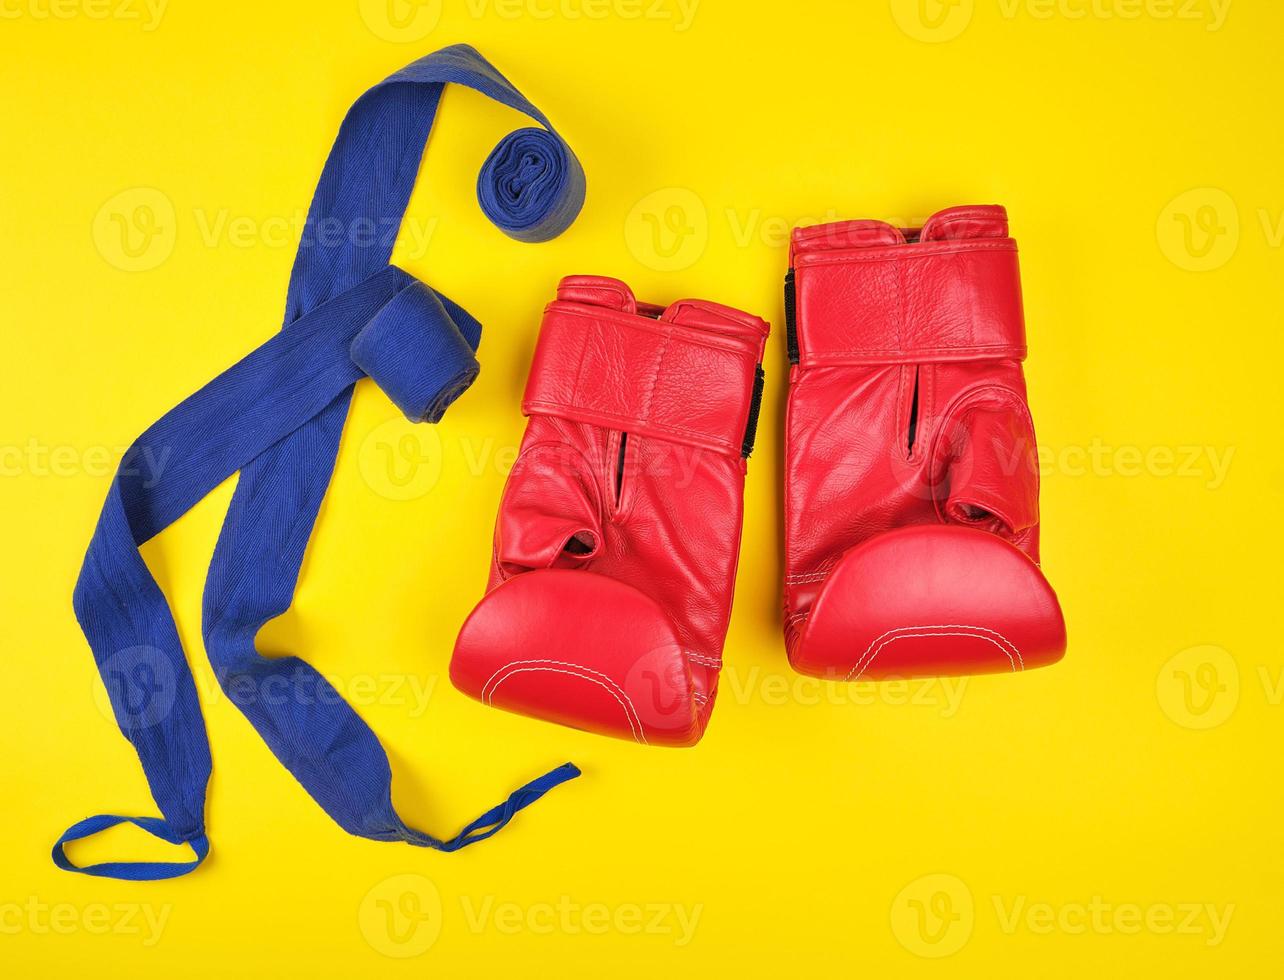 paar- van rood leer boksen handschoenen en blauw textiel verband foto